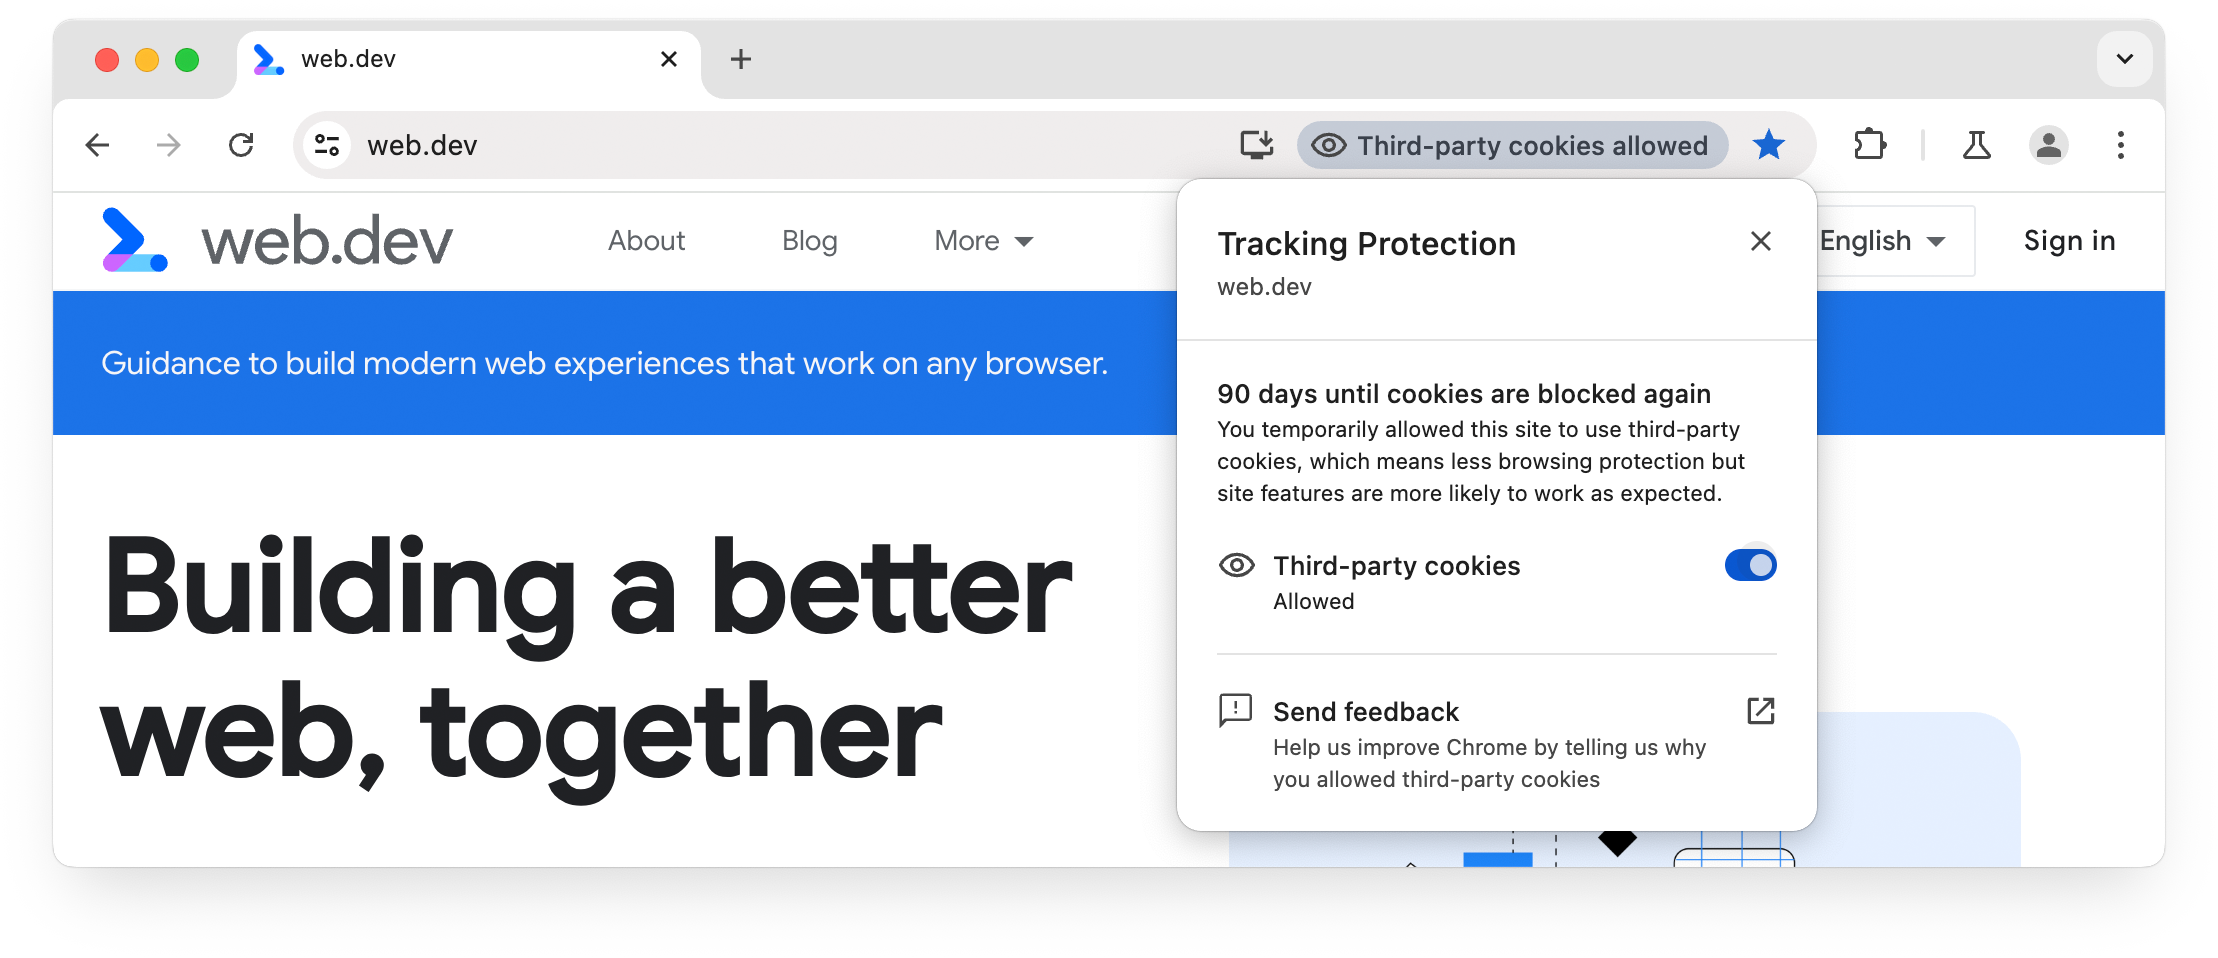 Chrome İzlemeye Karşı Koruma kullanıcı arayüzü: Geçerli site için üçüncü taraf çerezlerine izin veriliyor